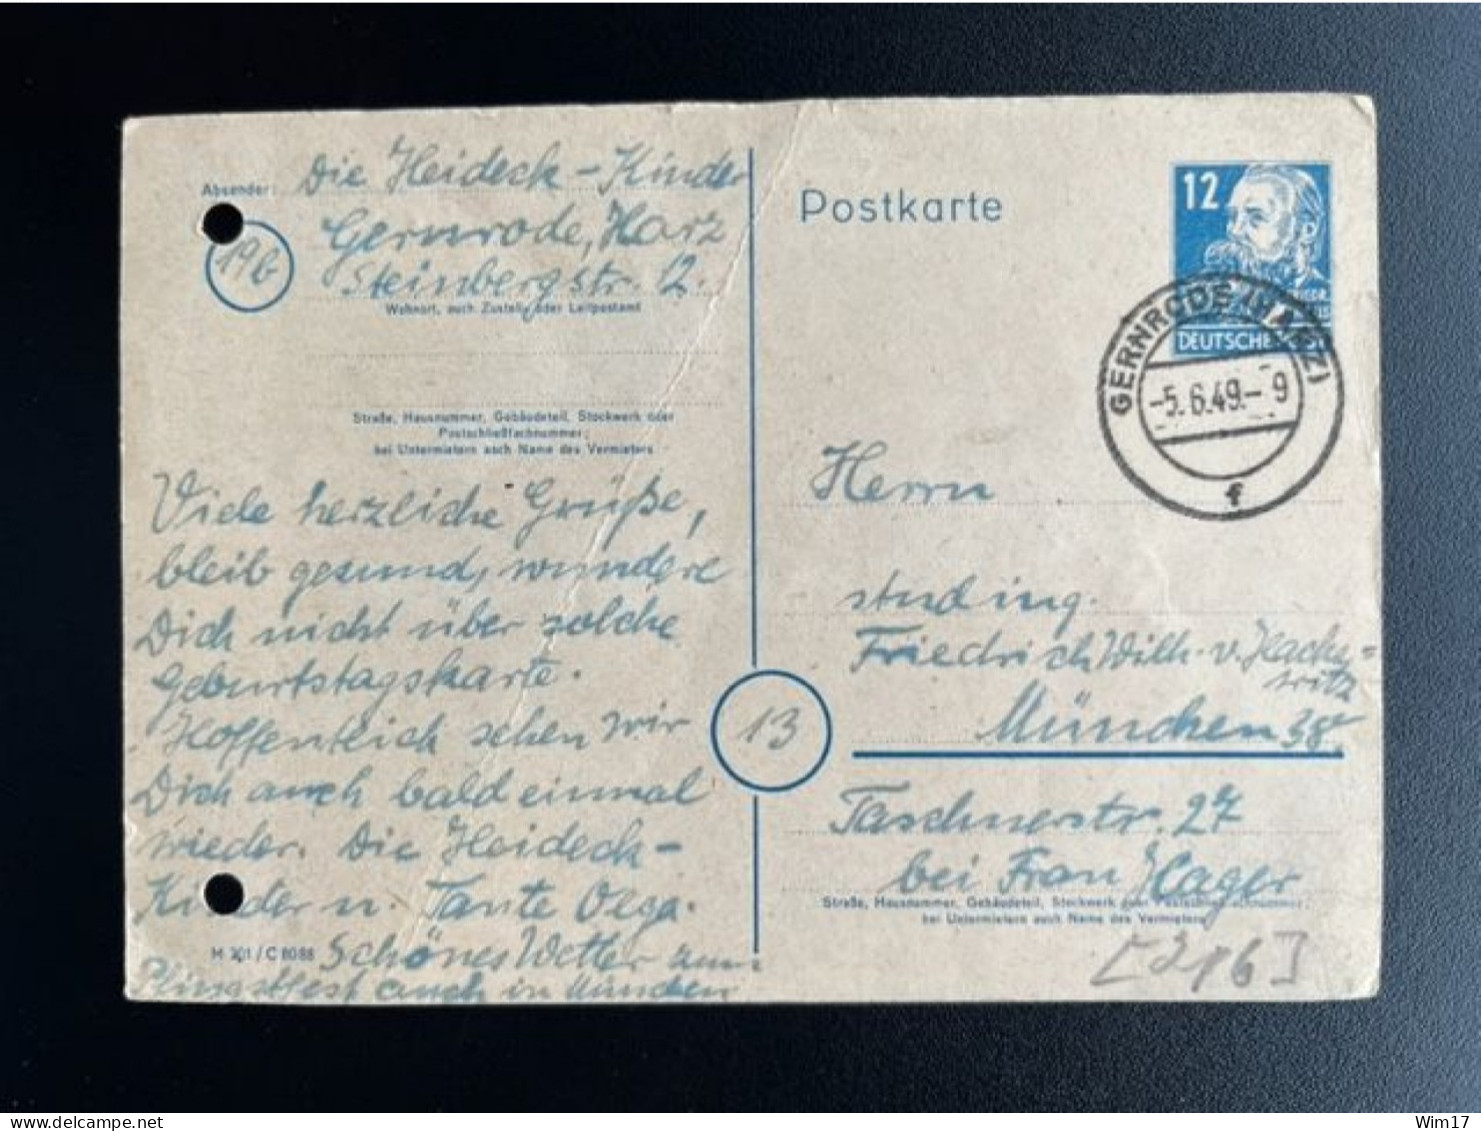 GERMANY 1949 POSTCARD GERNRODE TO MUNCHEN 05-06-1949 DUITSLAND DEUTSCHLAND - Enteros Postales